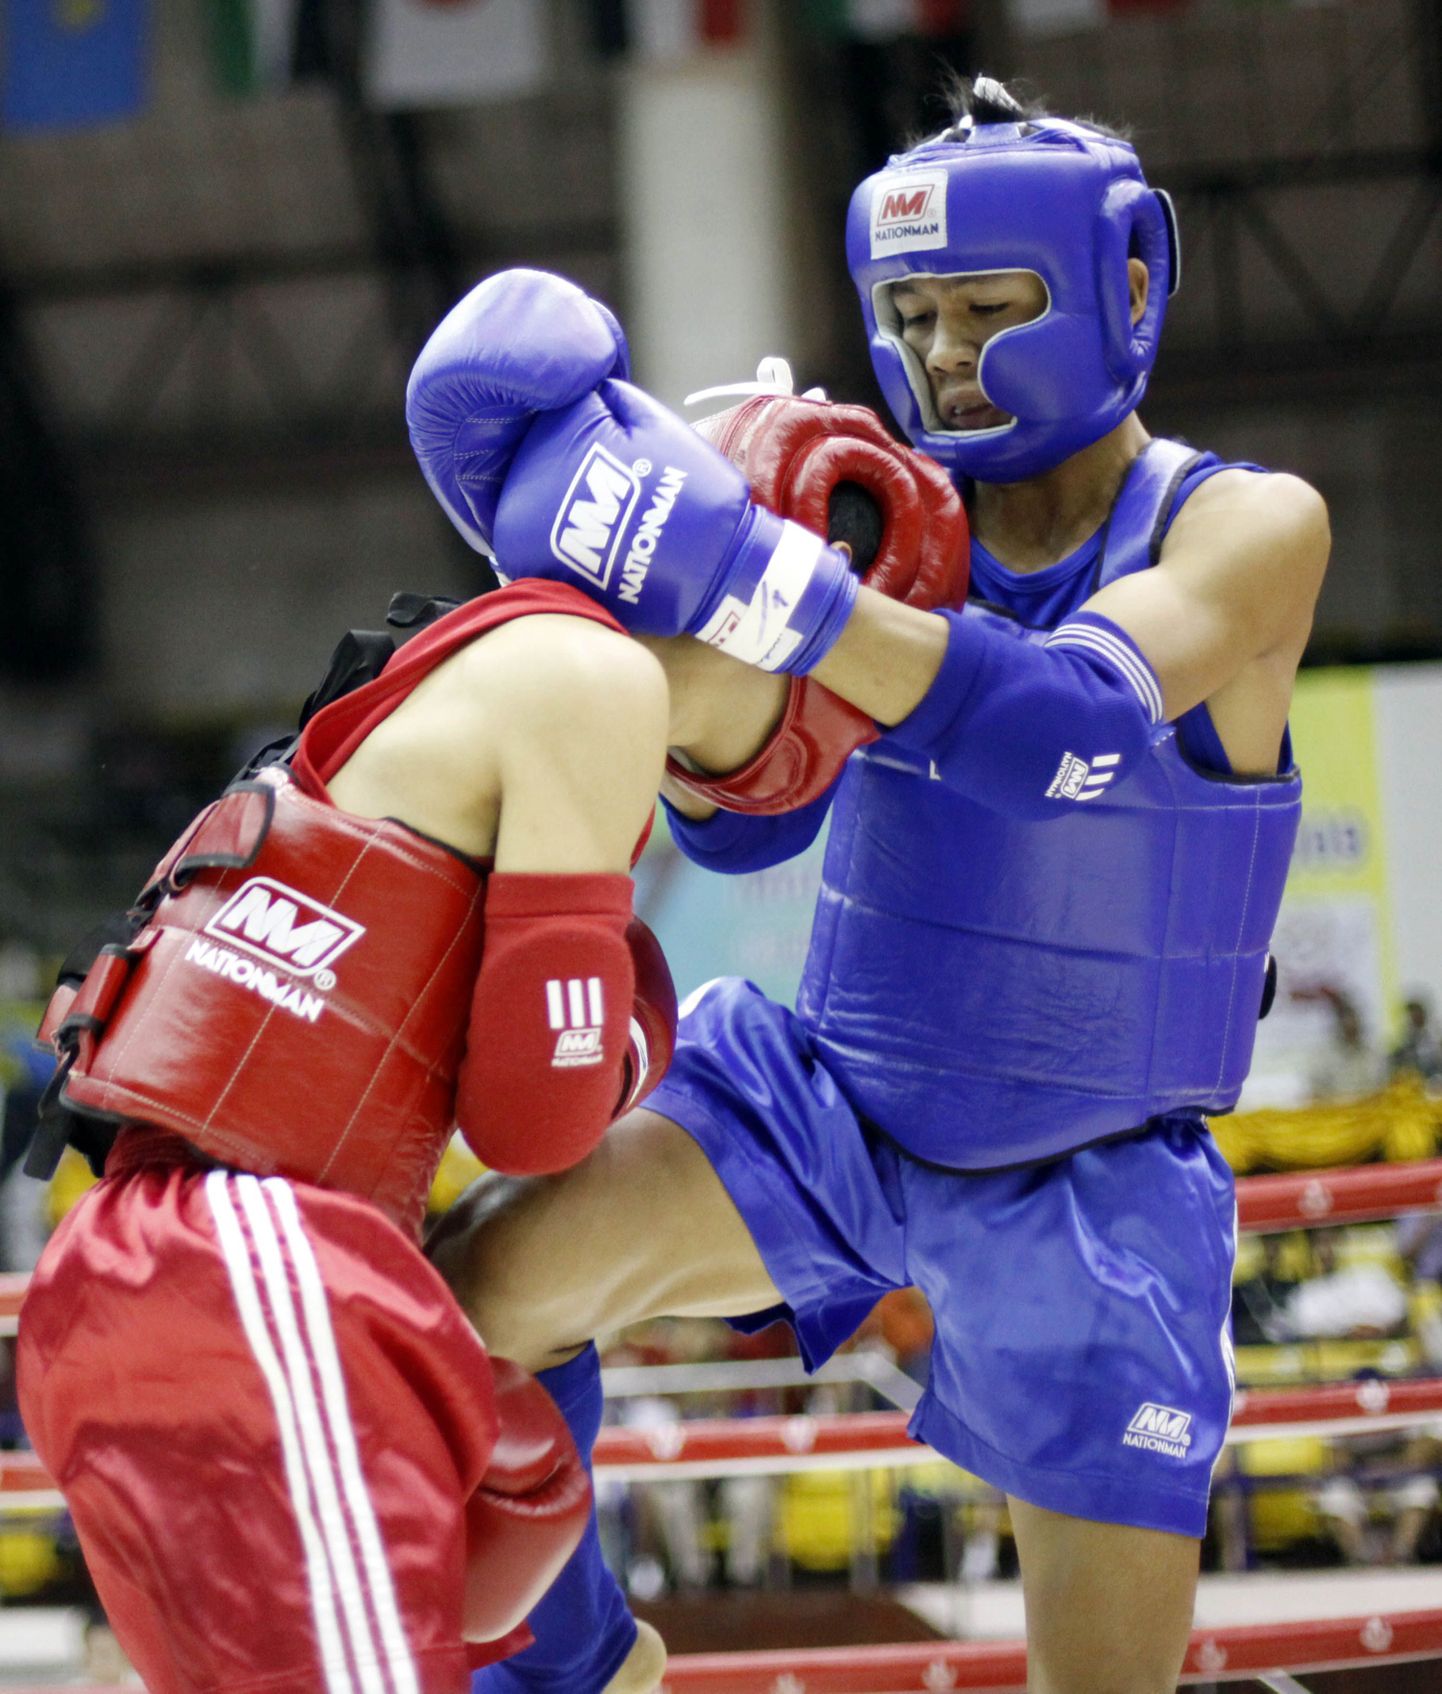 Muay Thai võistlus. PILDIL ON ILLUSTREERIV TÄHENDUS. K-1 võitlus koosneb erinevate võitluskunstide elementidest.